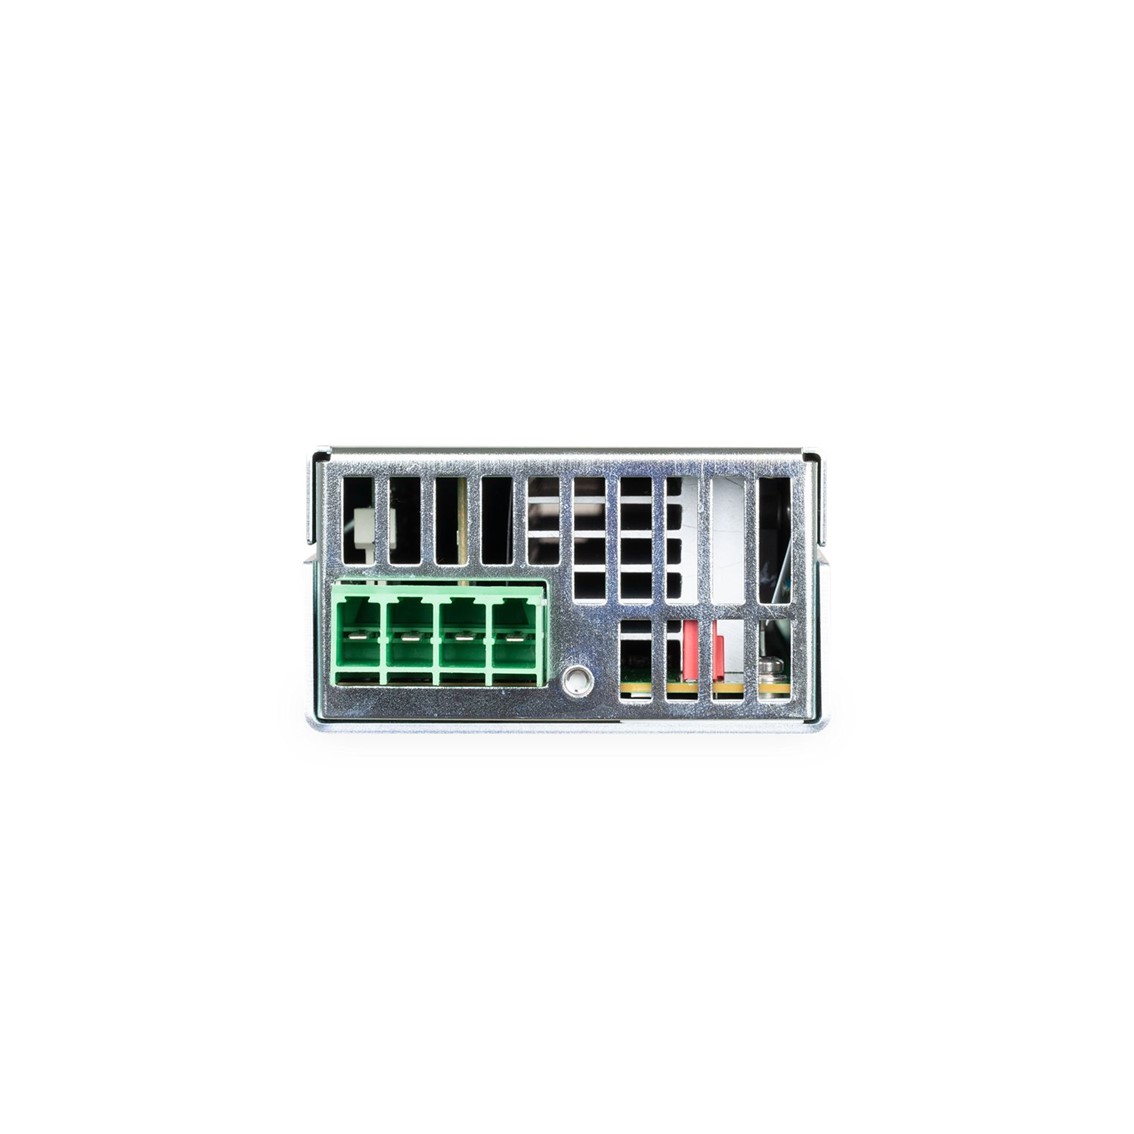 [ KEYSIGHT ] N6791A  모듈러 DC 전자 로드 모듈 60V/20A/100W  Modular DC Electronic Load Module(1U)